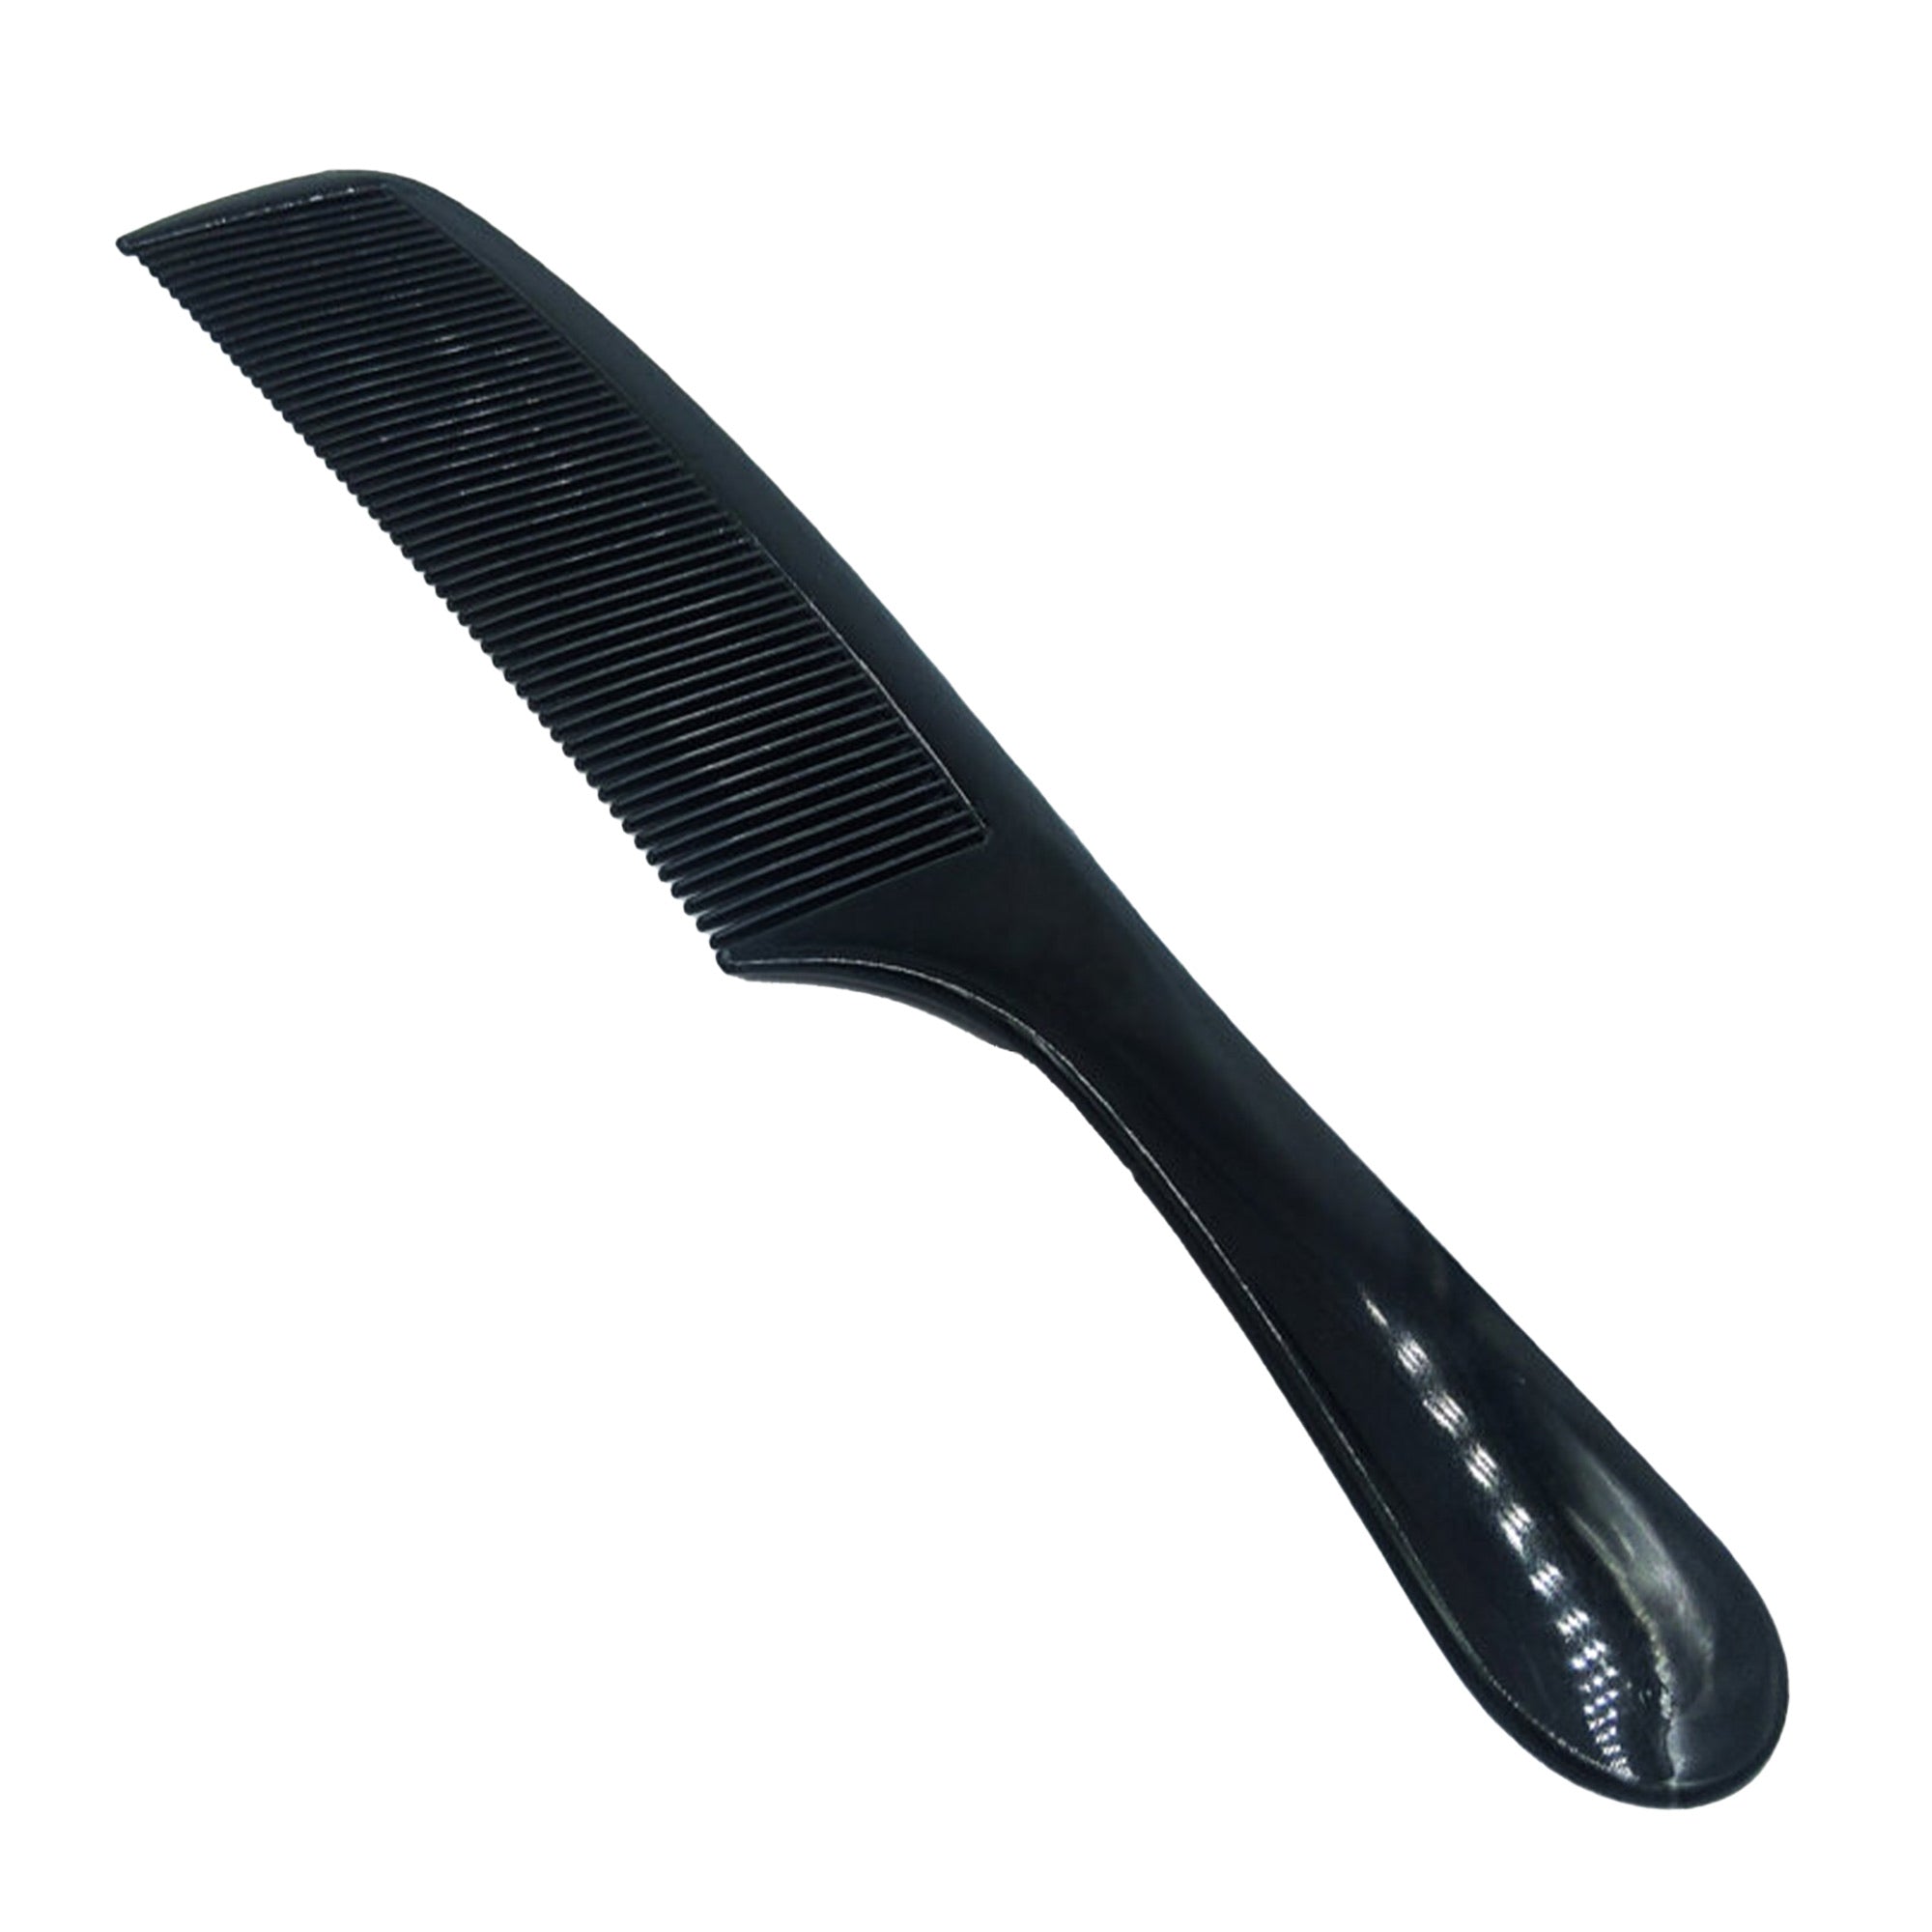 Gabri - Detangler Comb Comfortable Handle No.2303 22cm